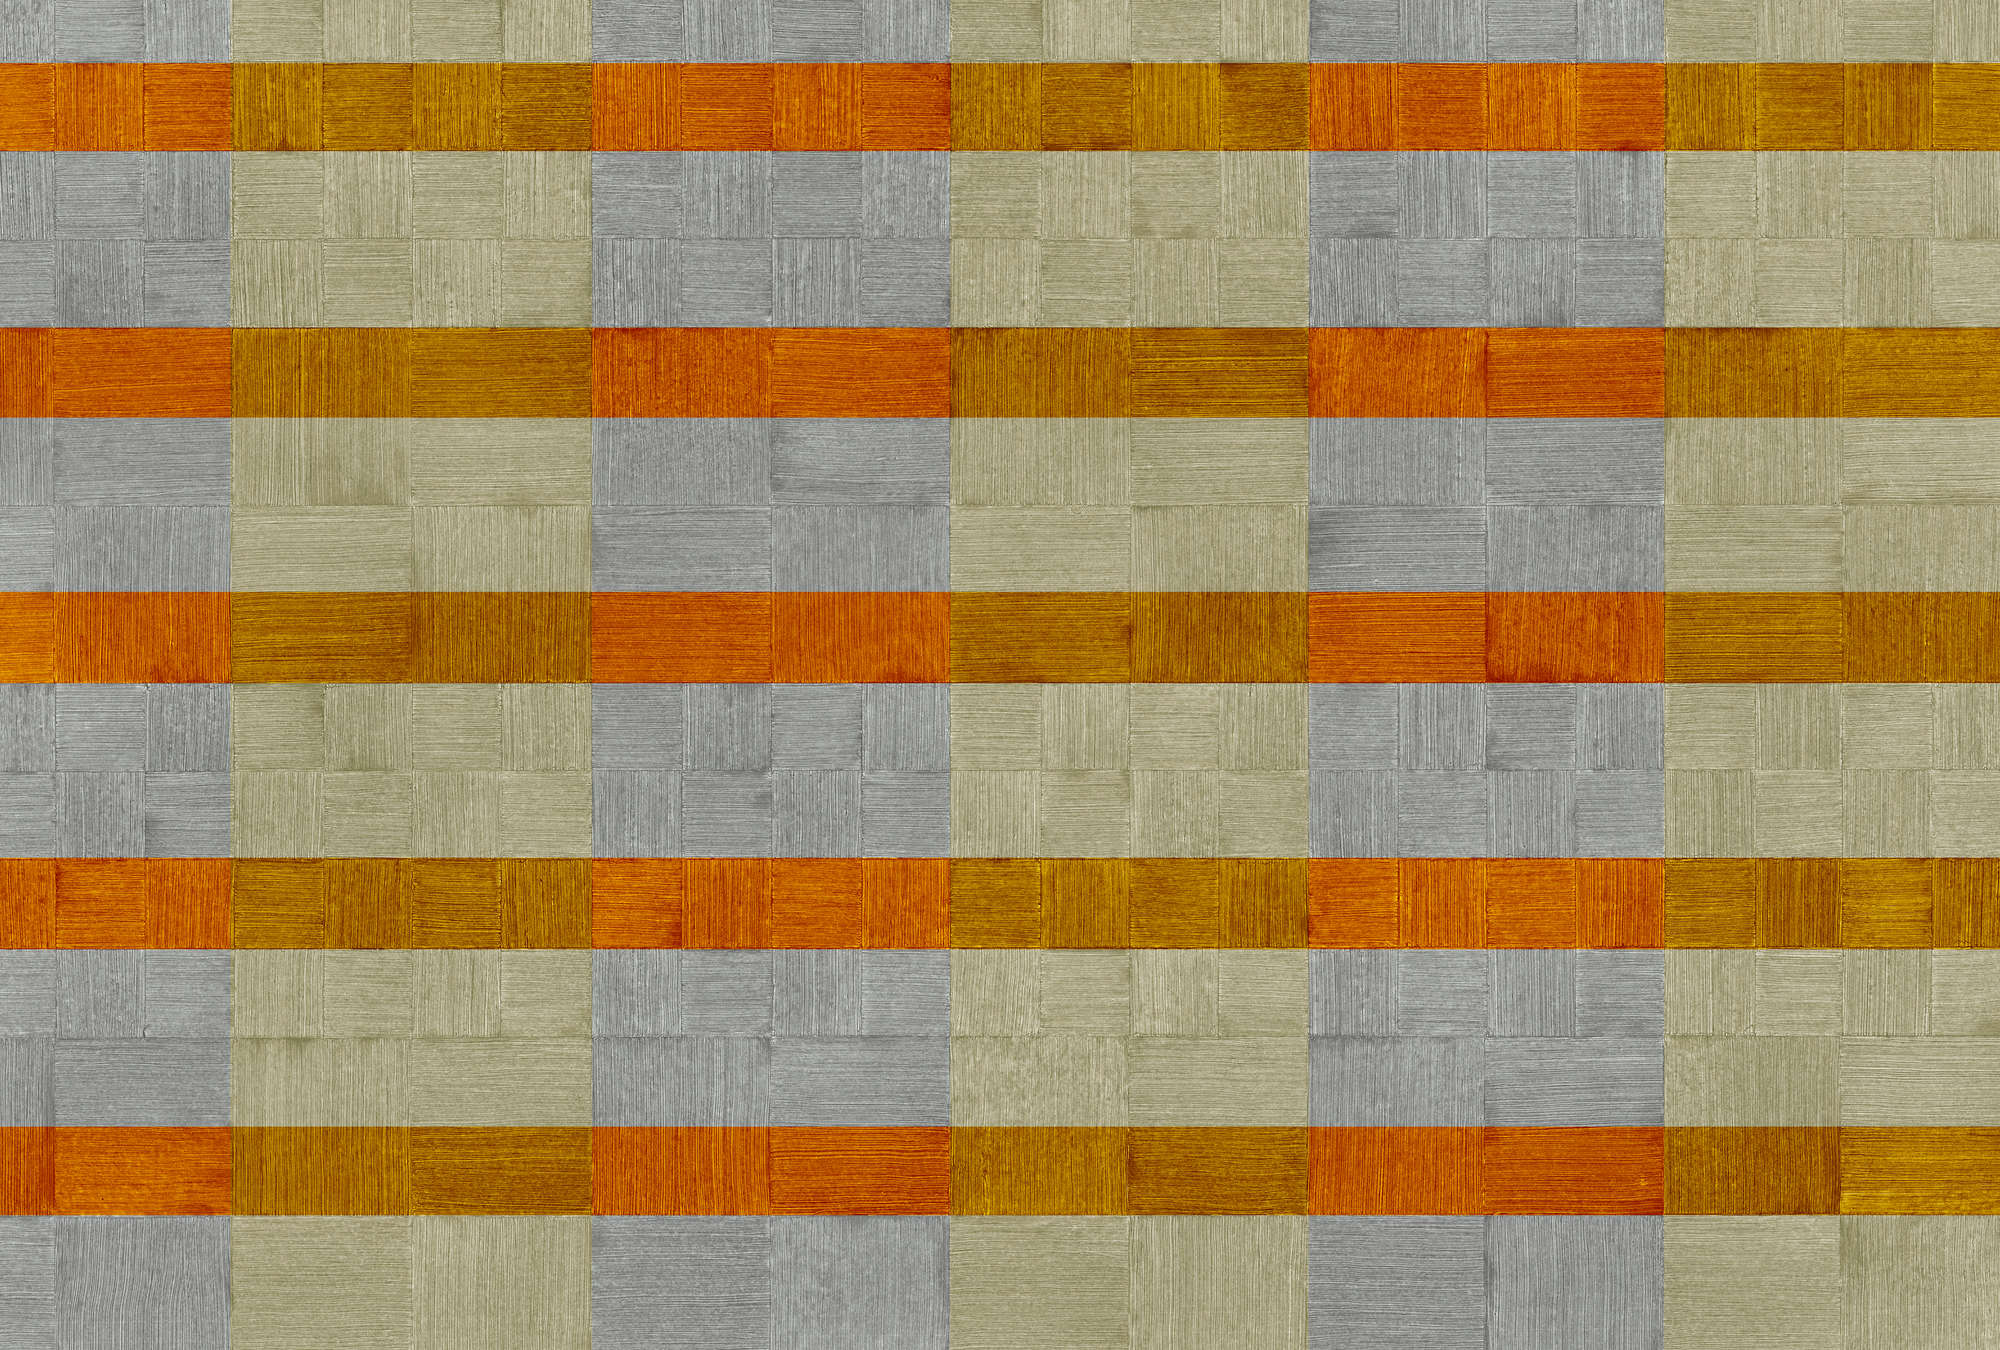             Carta da parati con disegno a righe e a quadri - Grigio, arancione, marrone
        